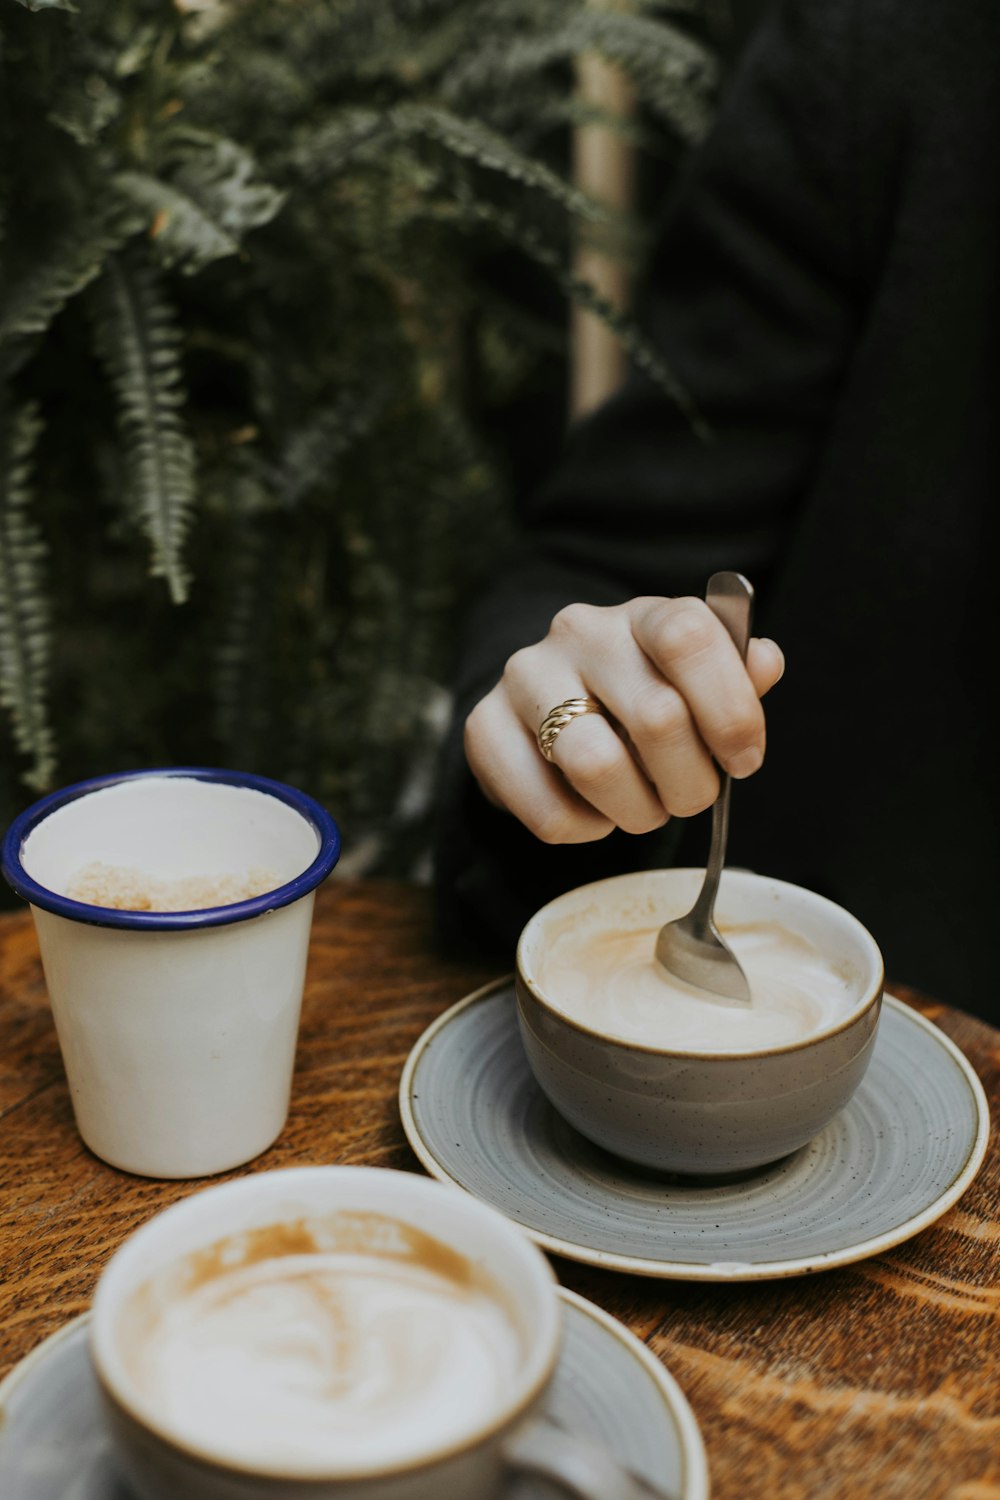 una persona sosteniendo una cuchara en una taza de café